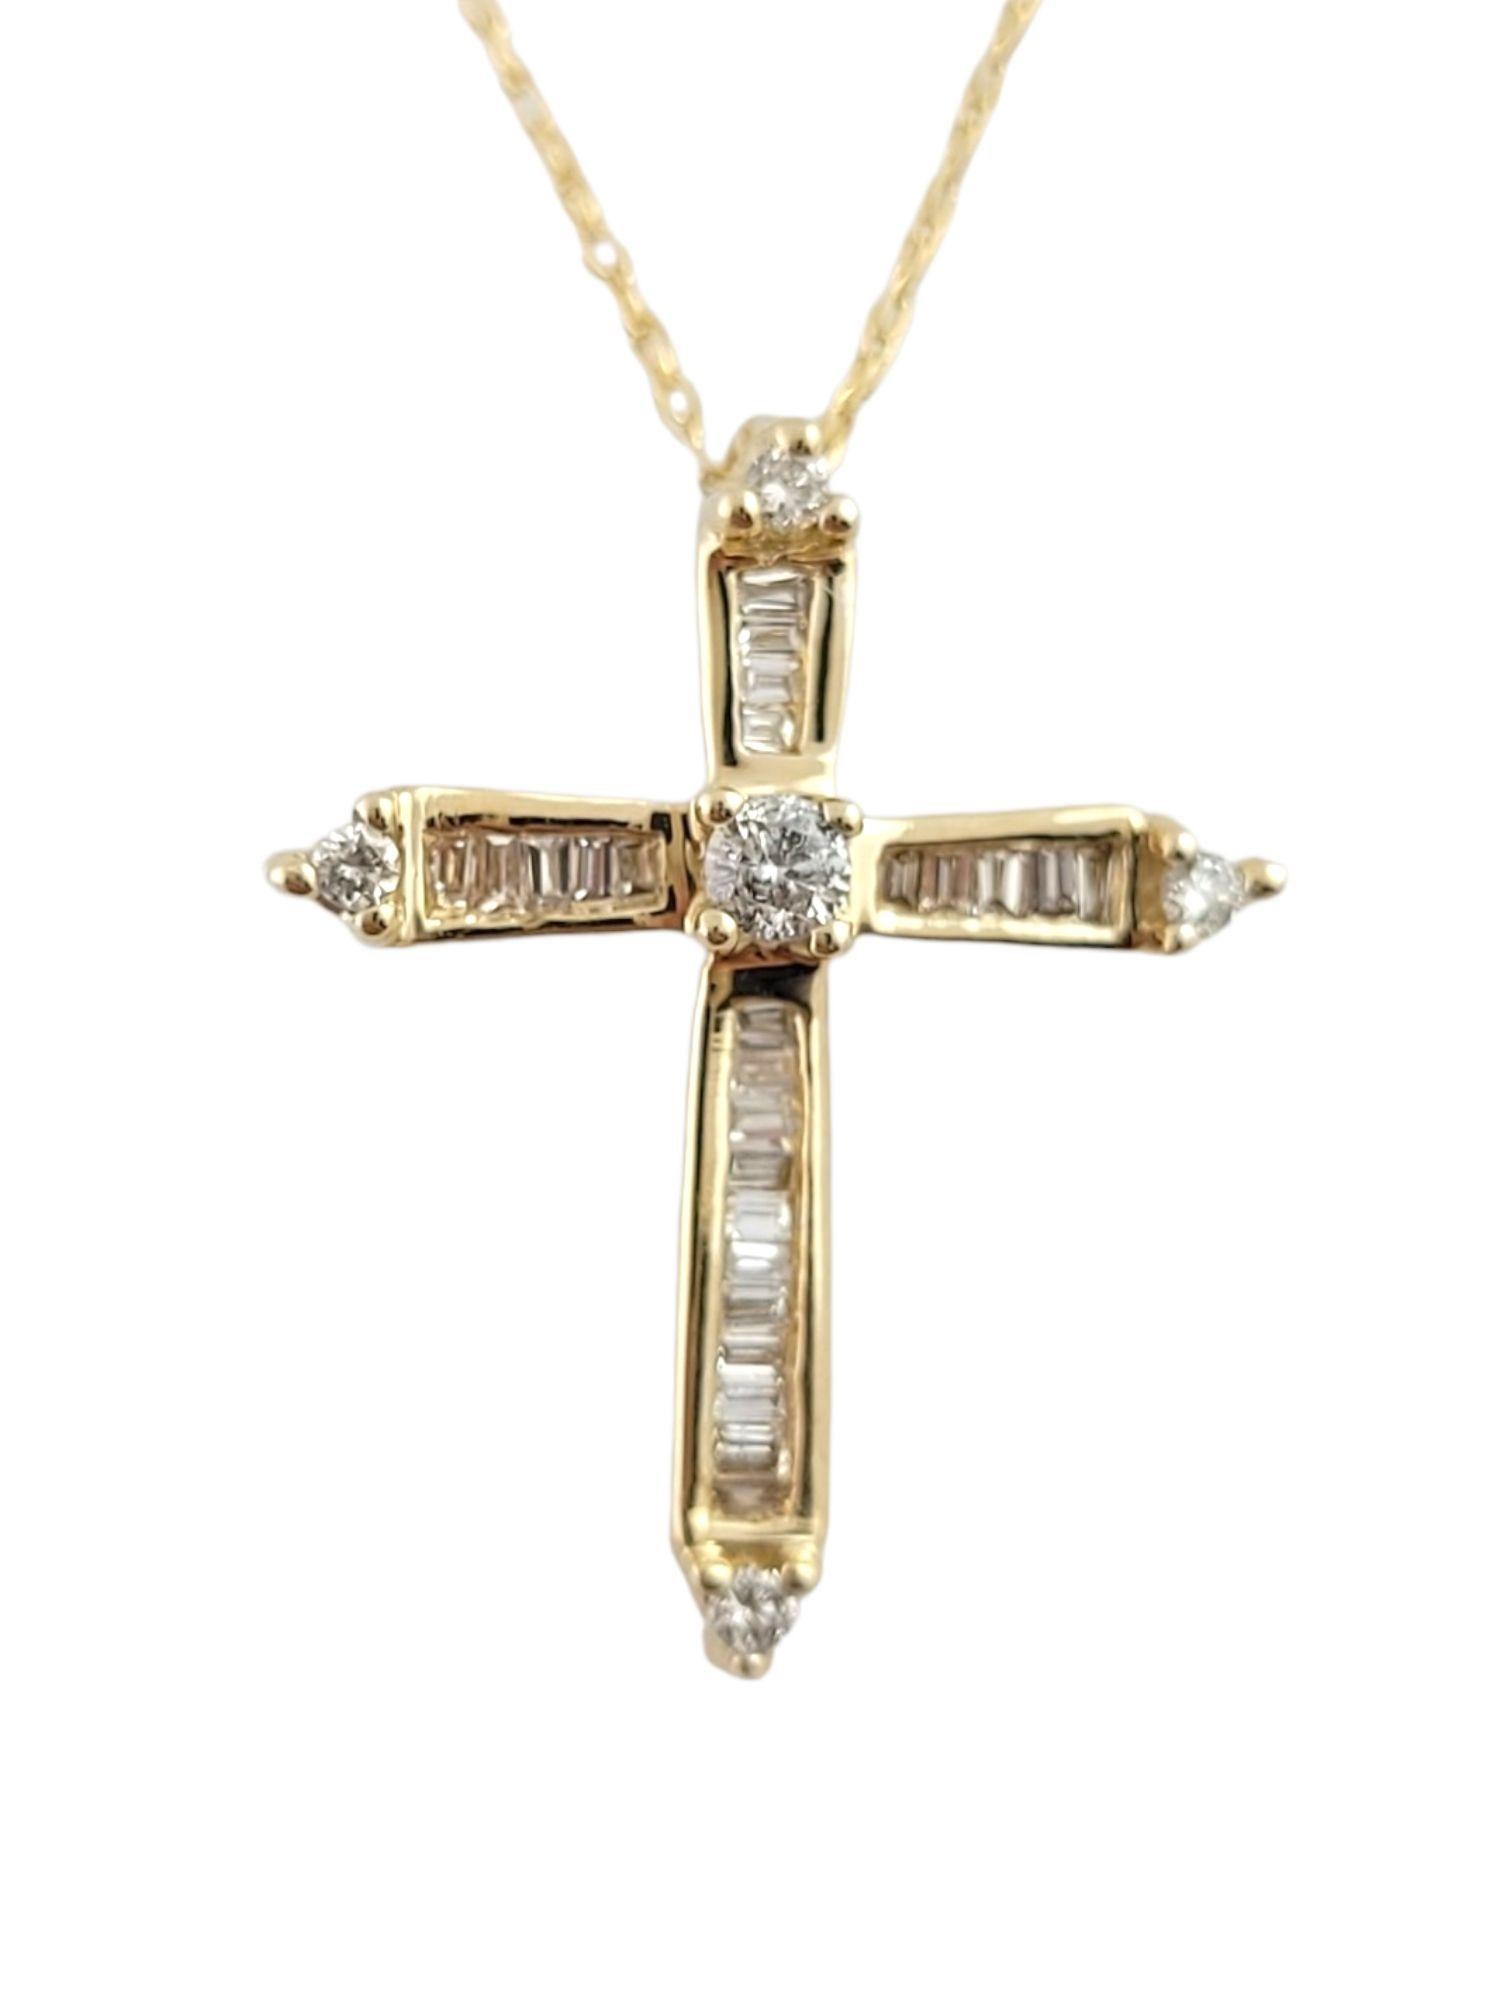 Baguette Cut 14K Yellow Gold Diamond Cross Pendant Necklace #14819 For Sale